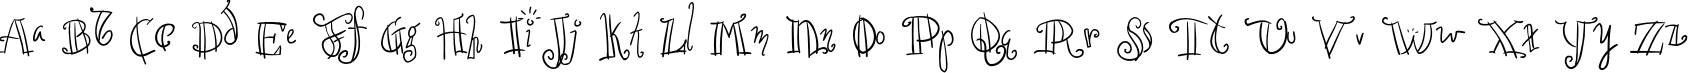 Пример написания английского алфавита шрифтом Croissant